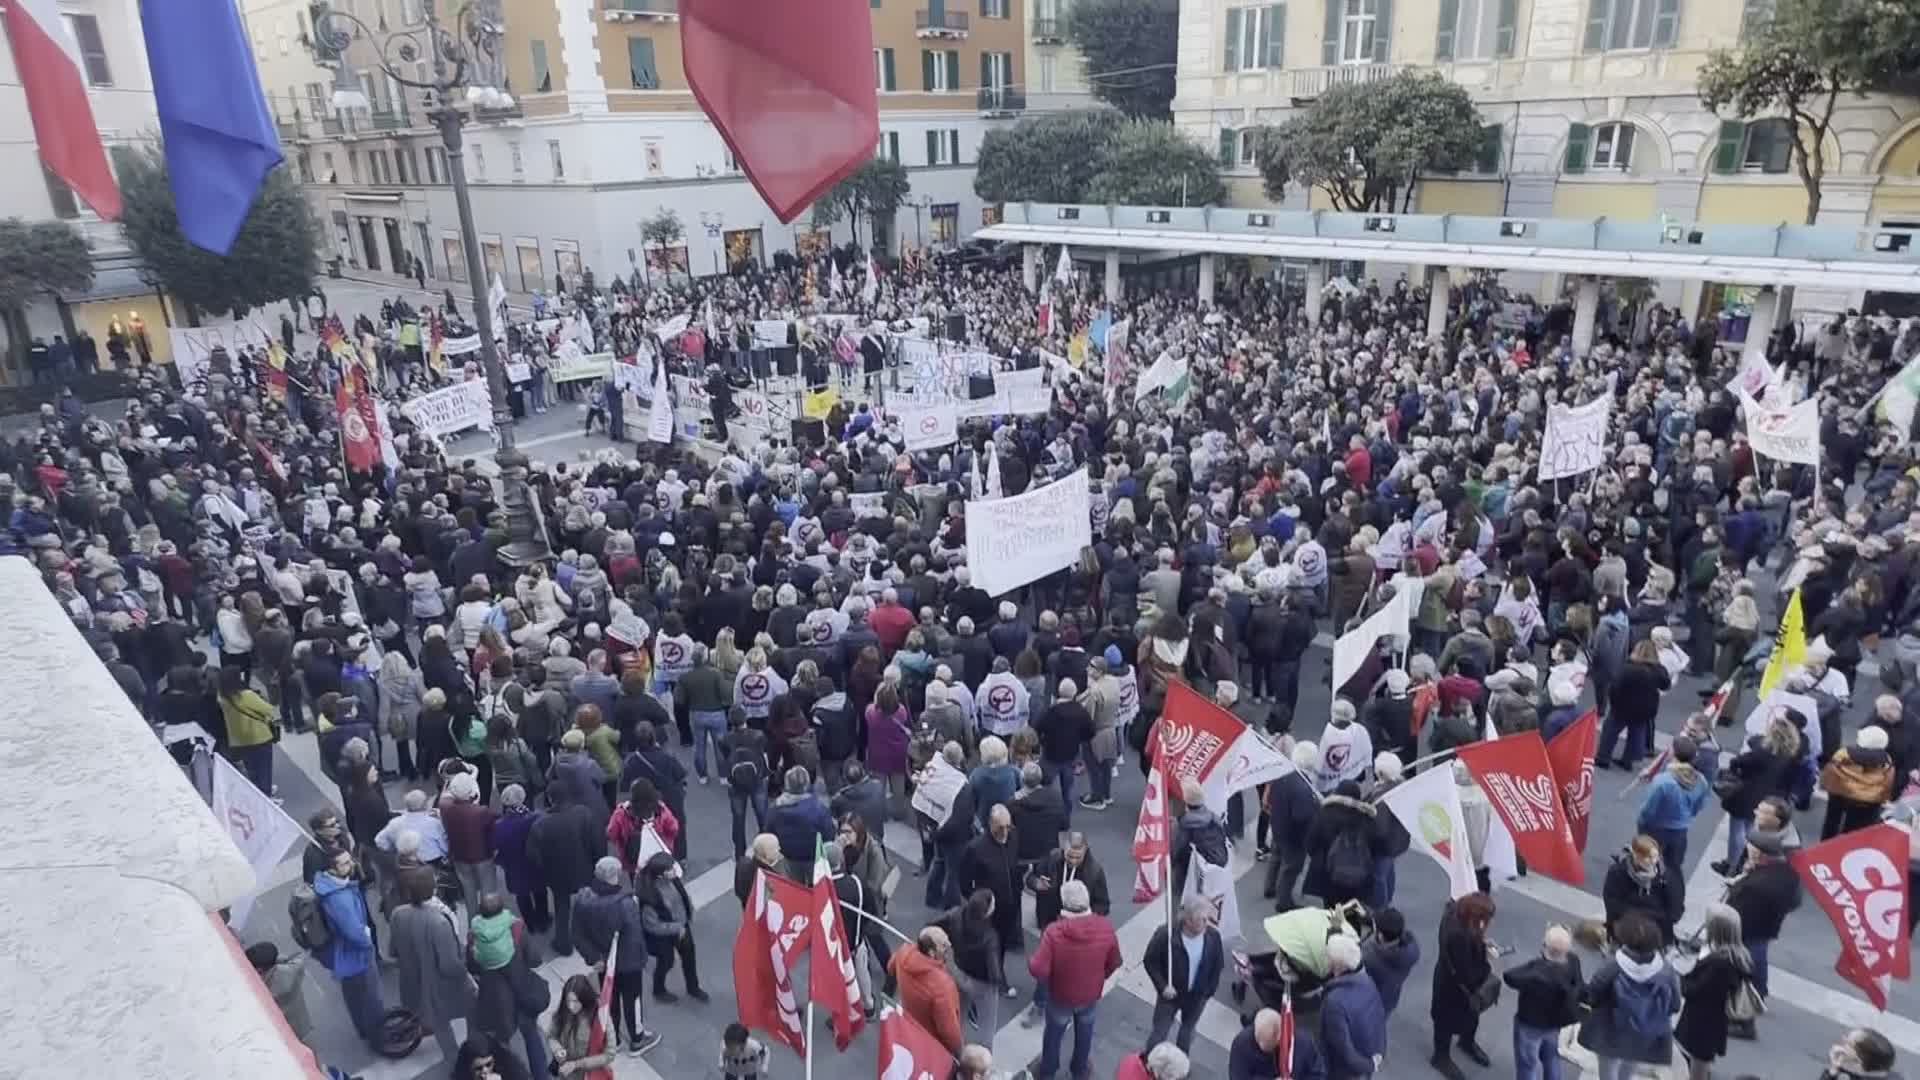 Rigassificatore, nuova protesta a Savona: 2000 persone per dire 'No'